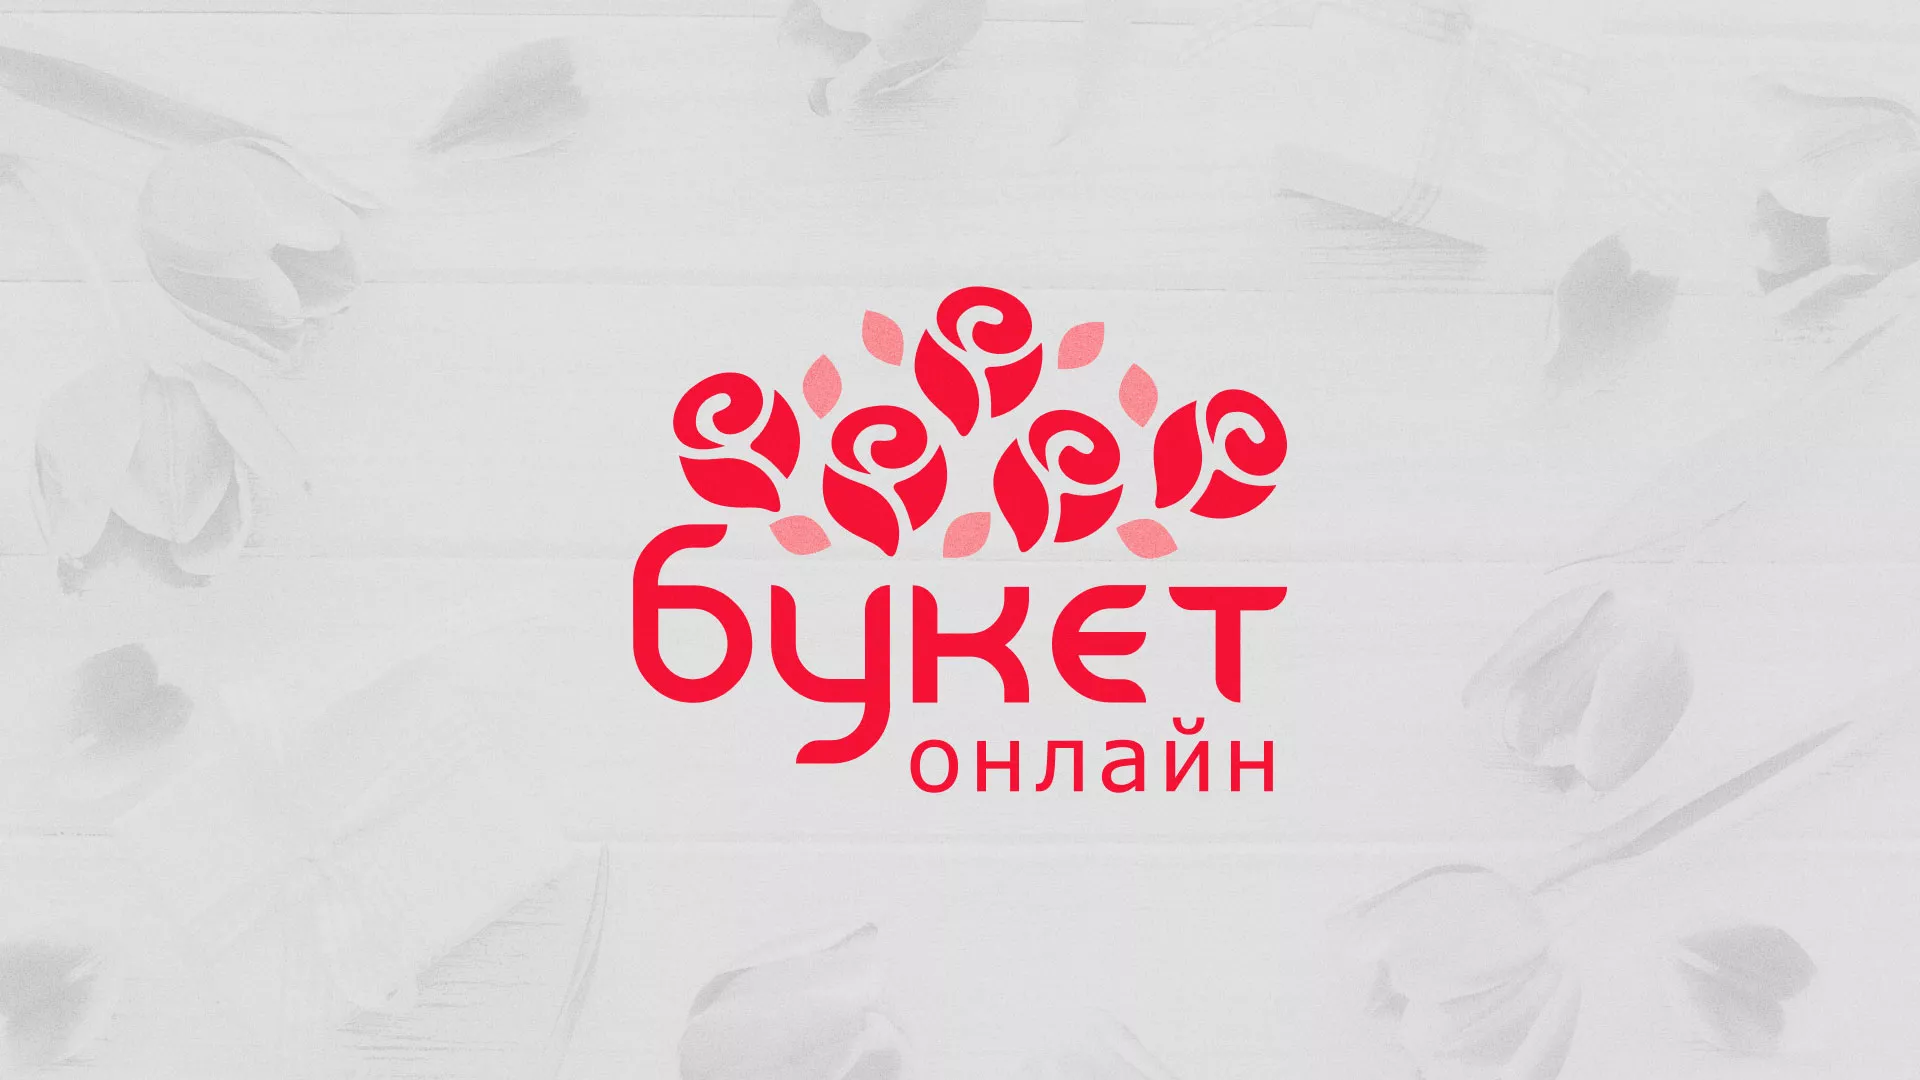 Создание интернет-магазина «Букет-онлайн» по цветам в Гаджиево